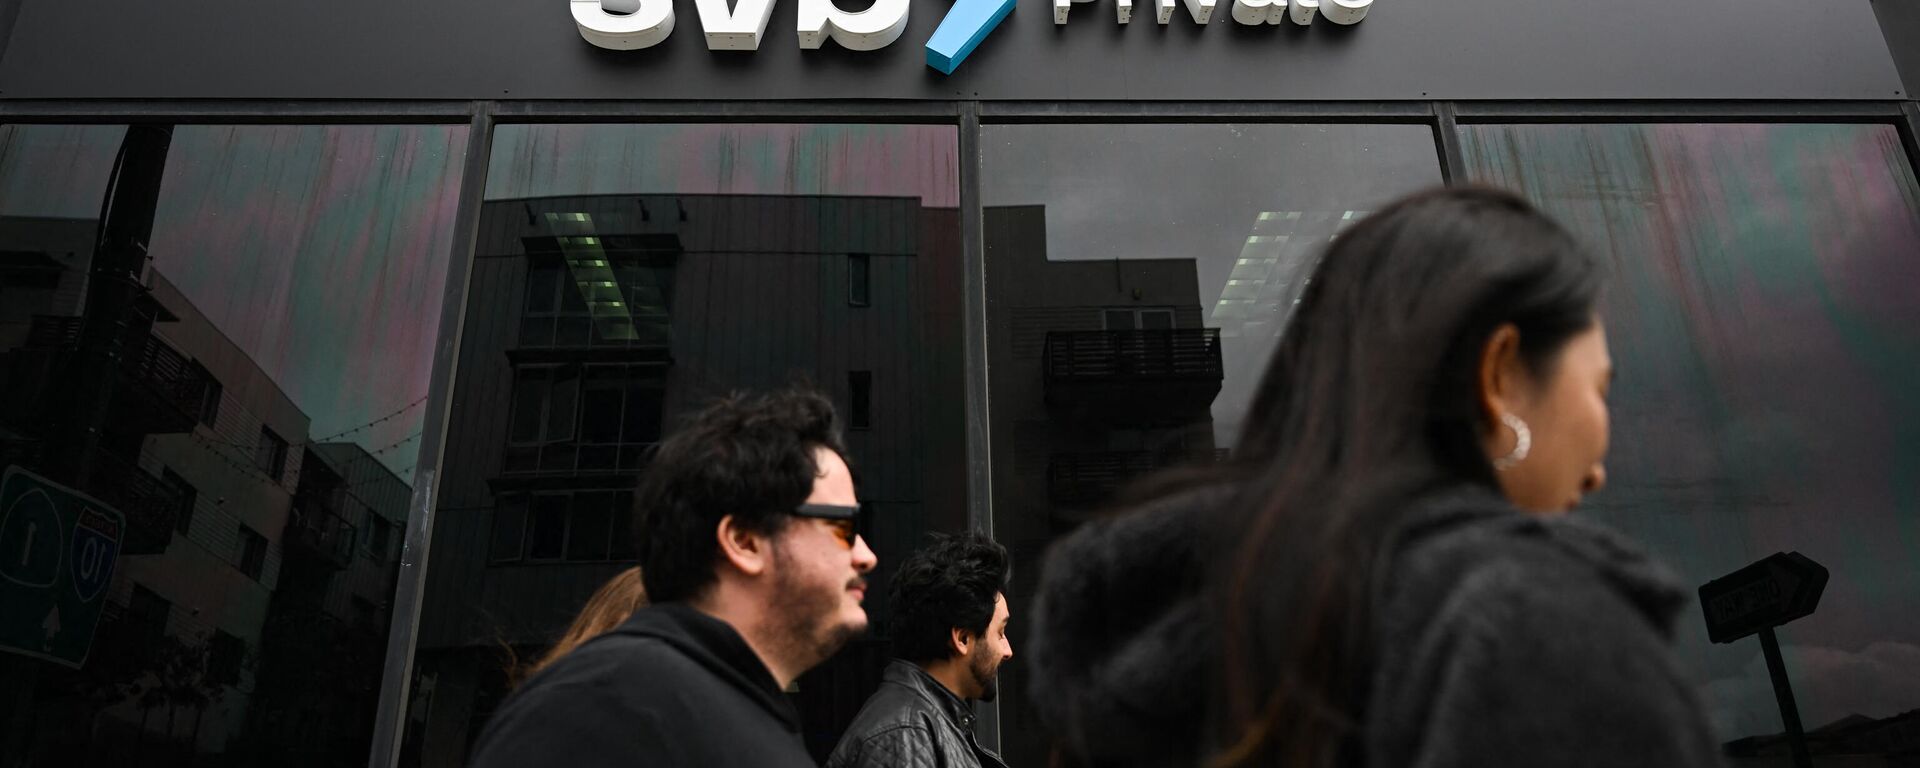 Logotipo do SVB Private na porta entrada de prédio de filial do Silicon Valley Bank, que faliu em meio a uma corrida aos depósitos do banco, em Santa Monica, Califórnia, EUA, 20 de março de 2023 - Sputnik Brasil, 1920, 26.03.2023